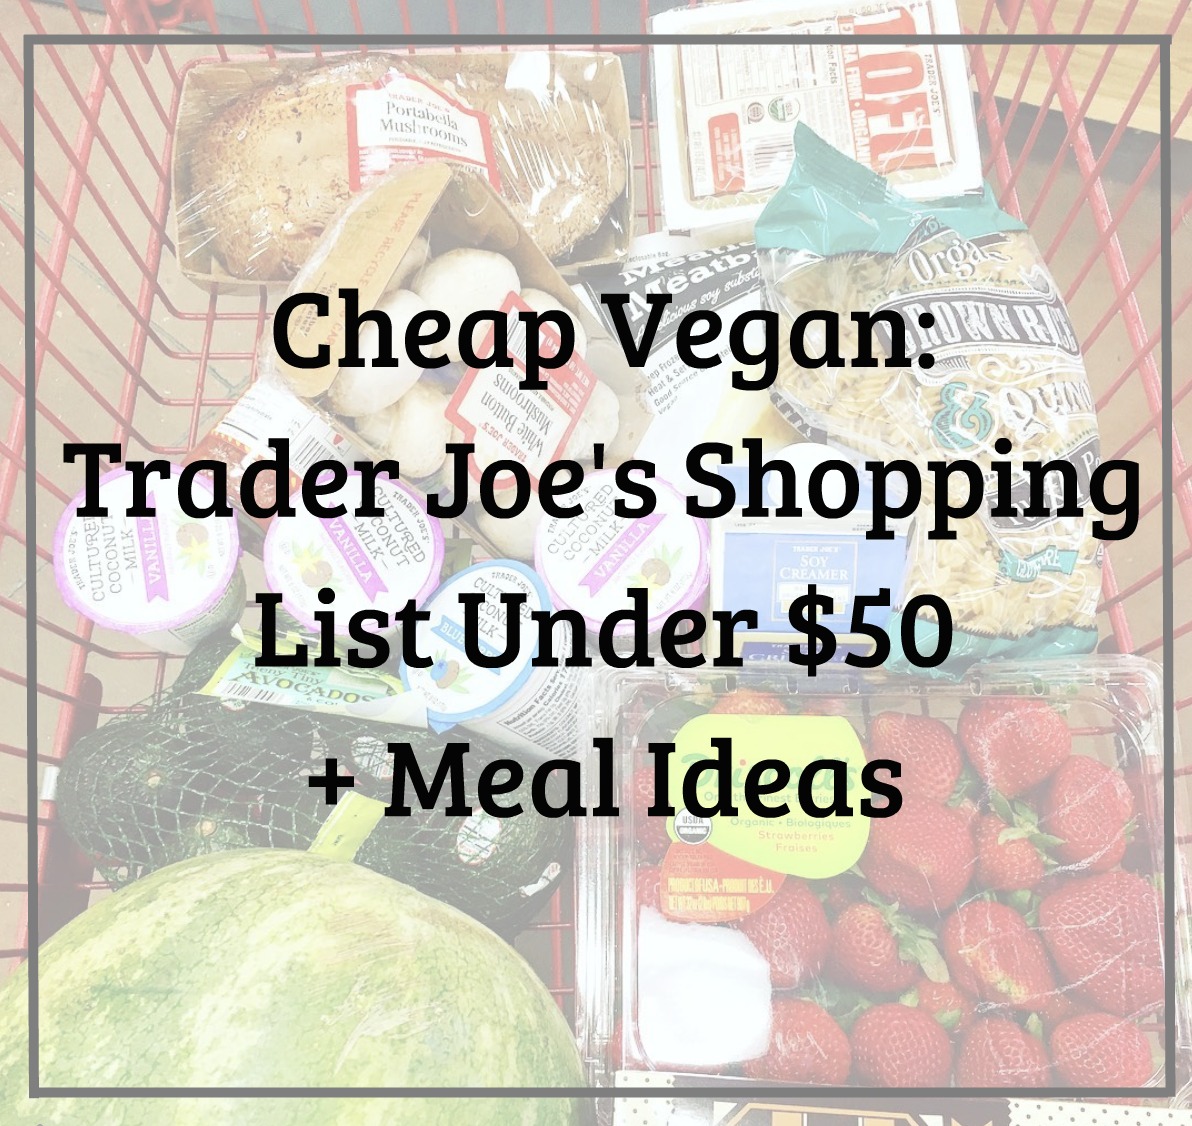 Cheap Vegan: Trader Joe's Shopping List Under $50 + Meal Ideas